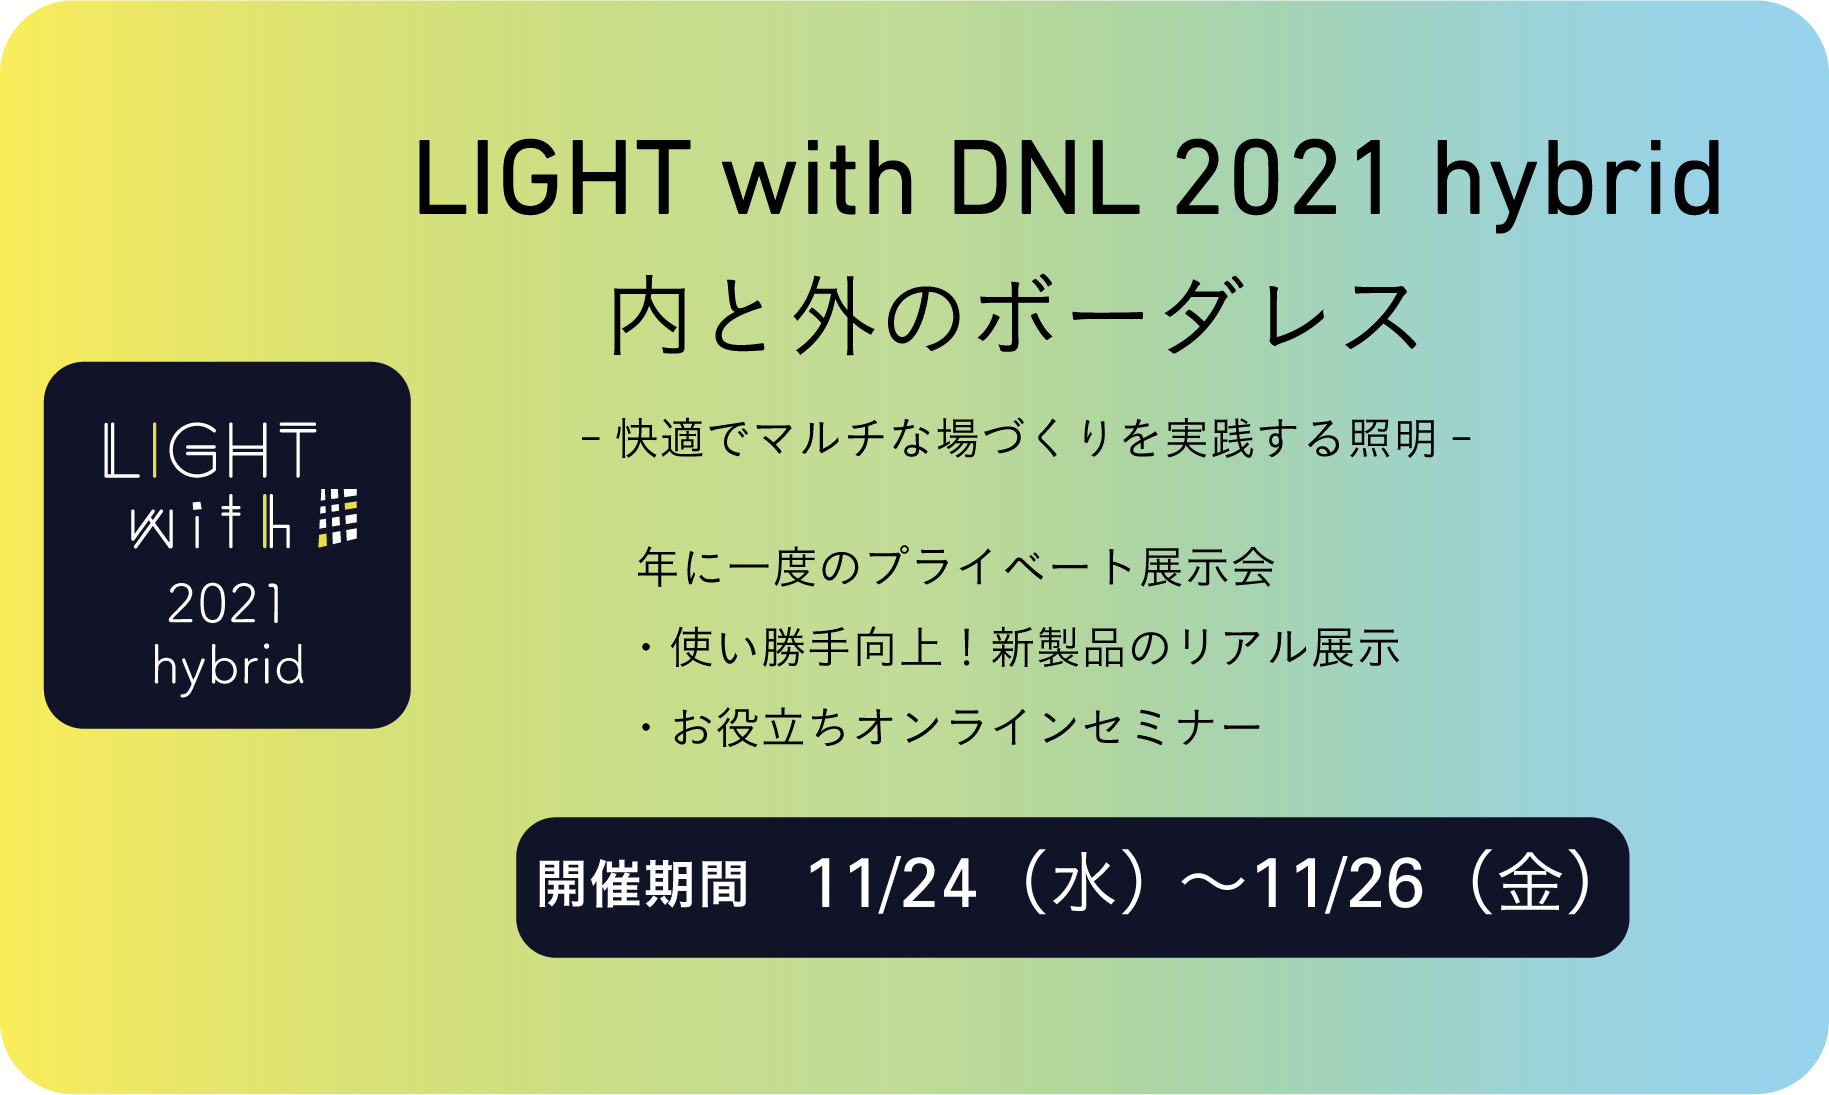 新商品発表会LIGHT with DNL 2021 hybrid 開催